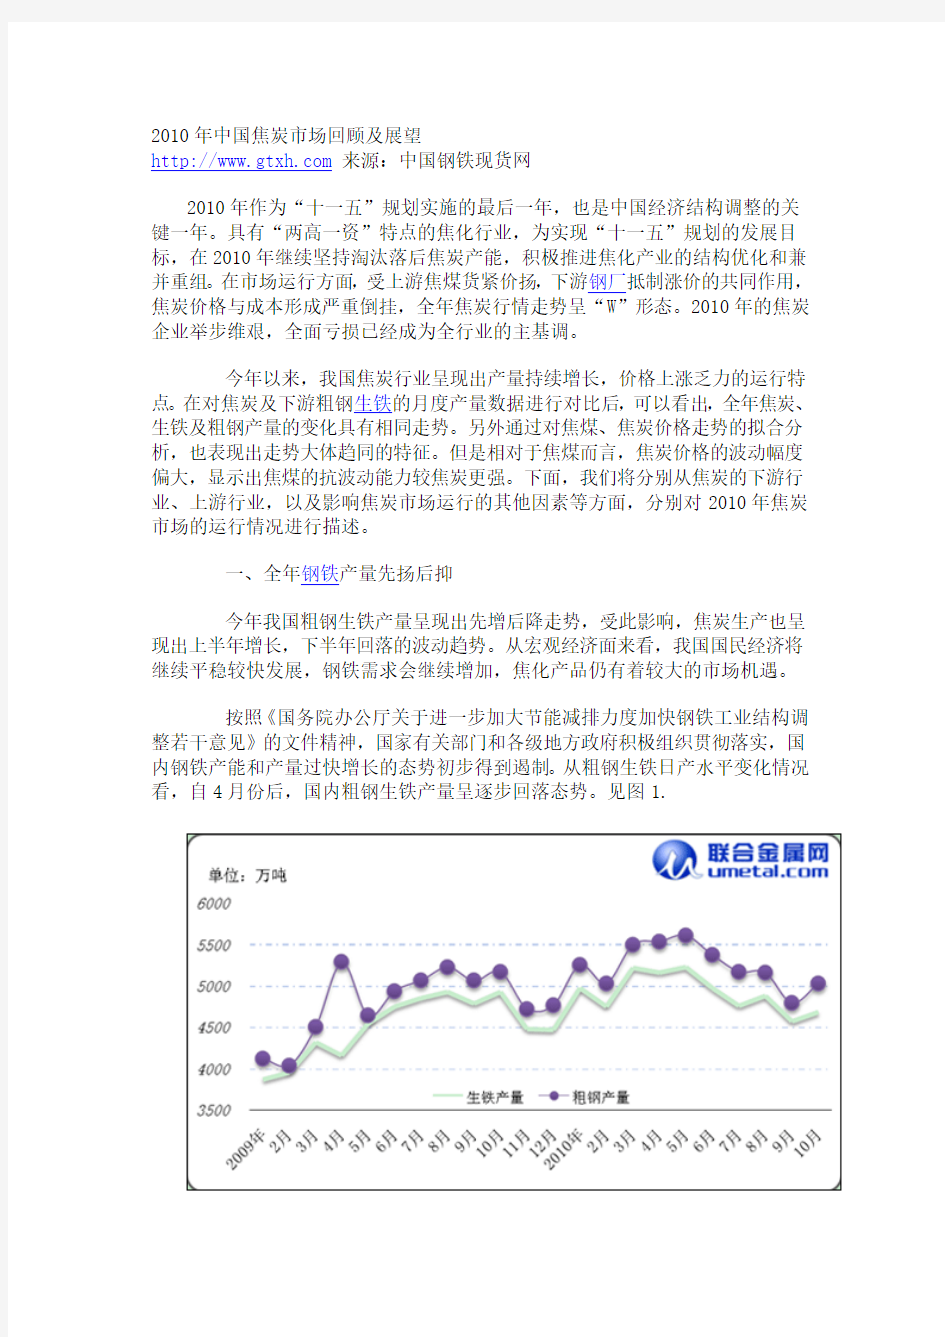 2010年中国焦炭市场分析